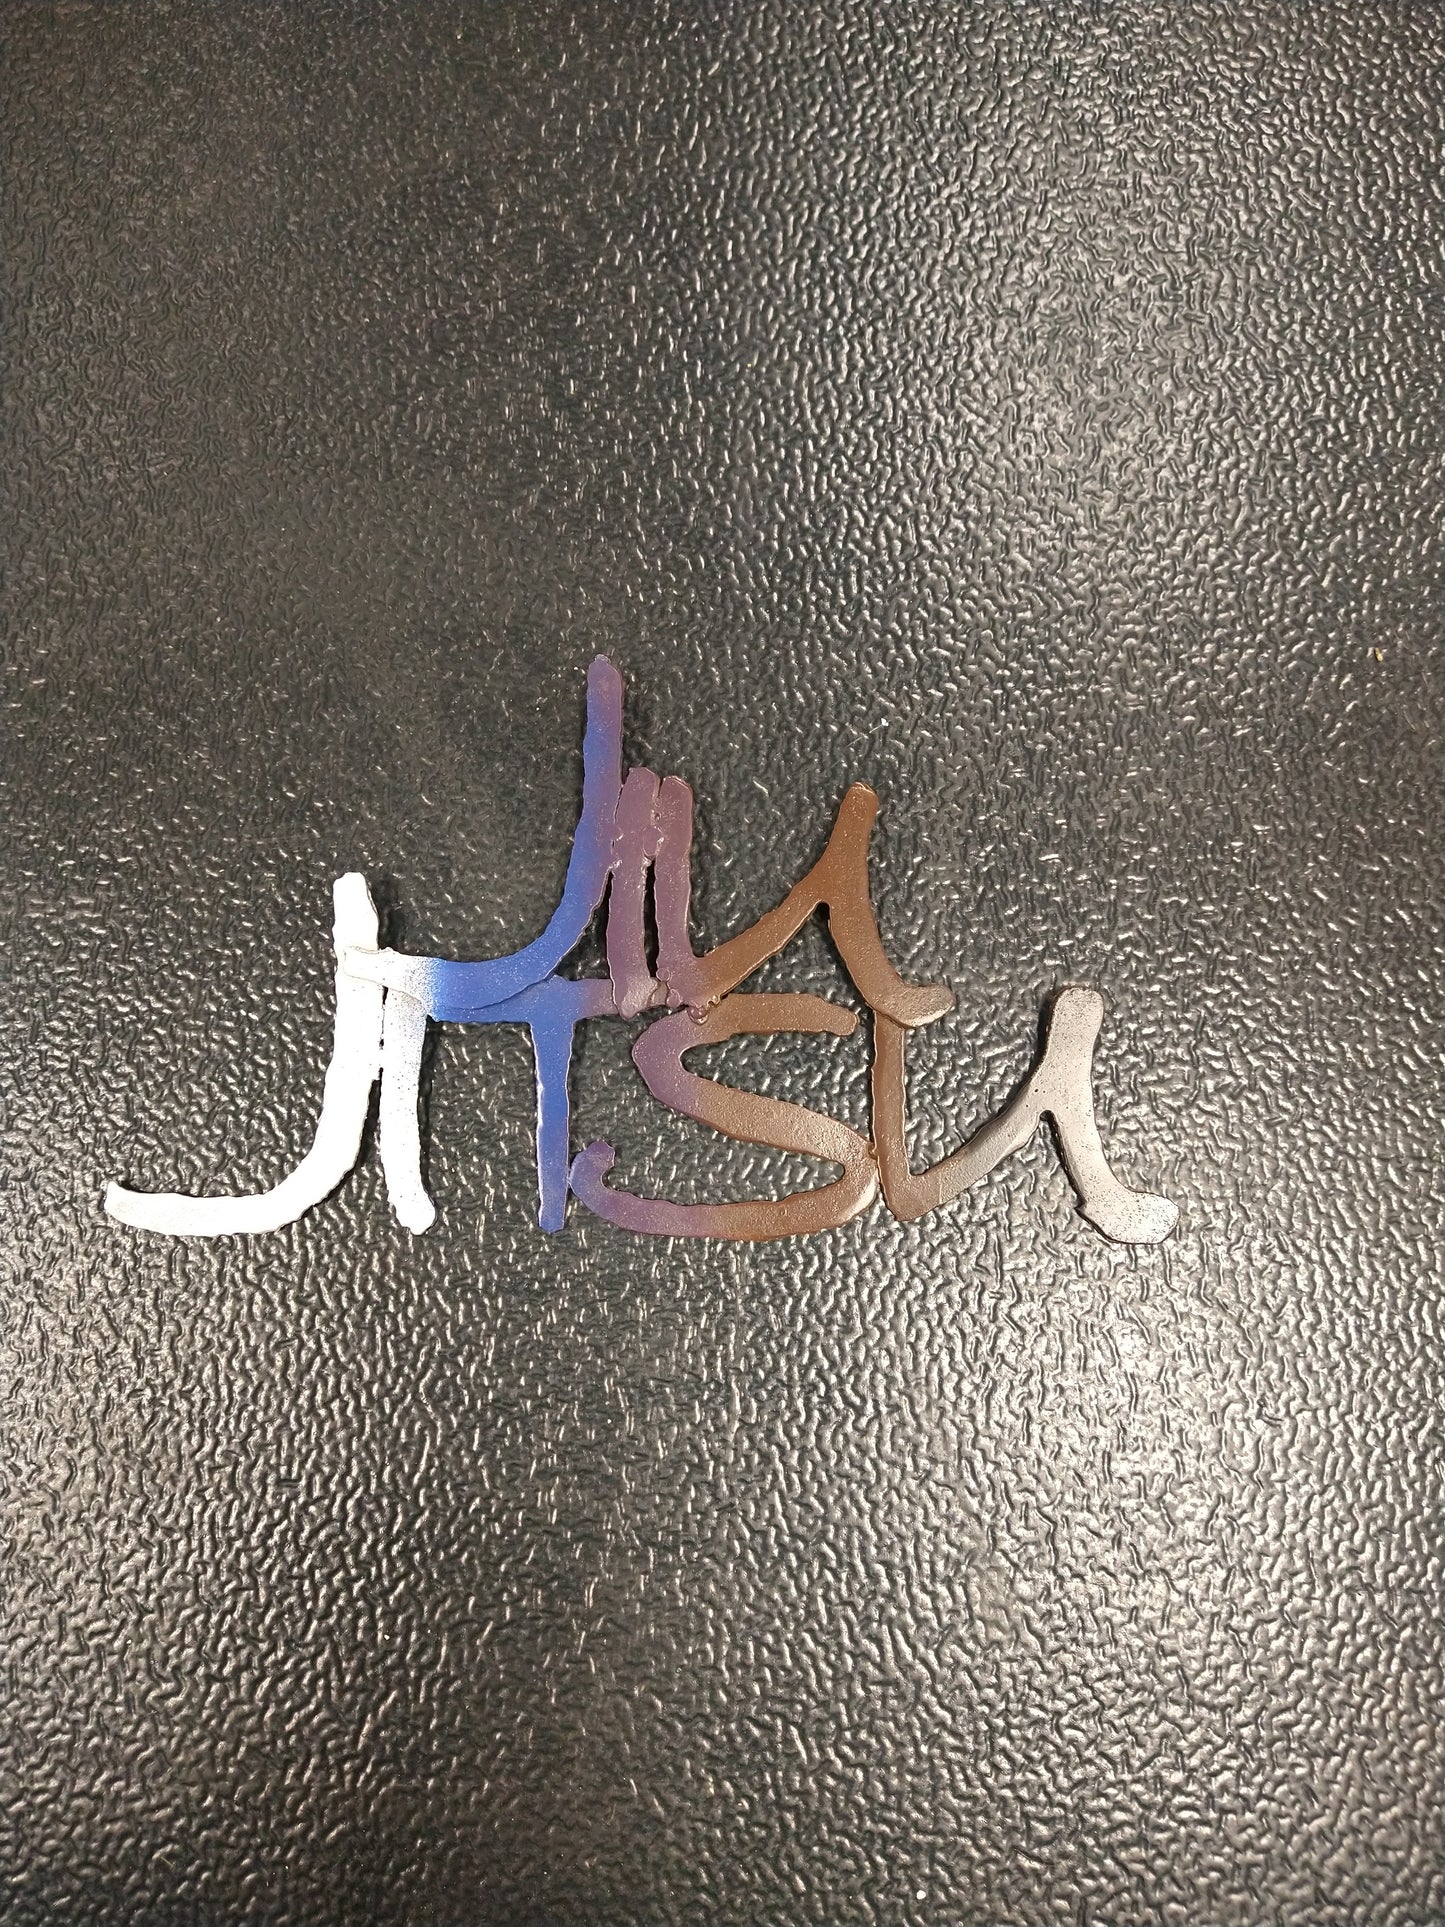 Jiu Jitsu Sign